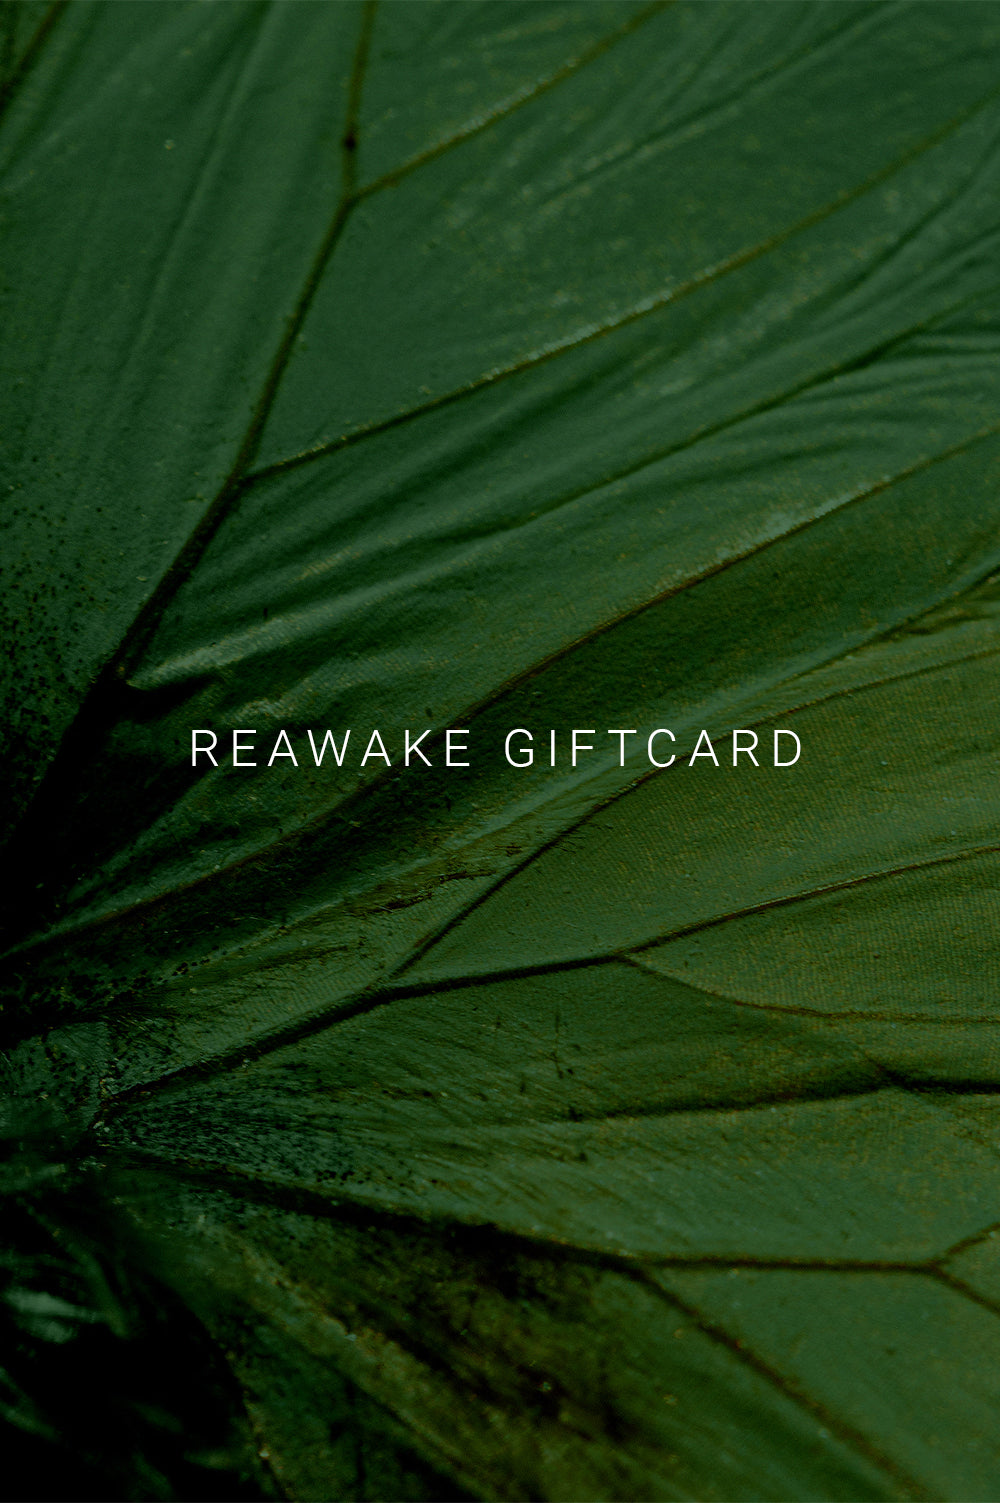 REAWAKE GIFT CARD